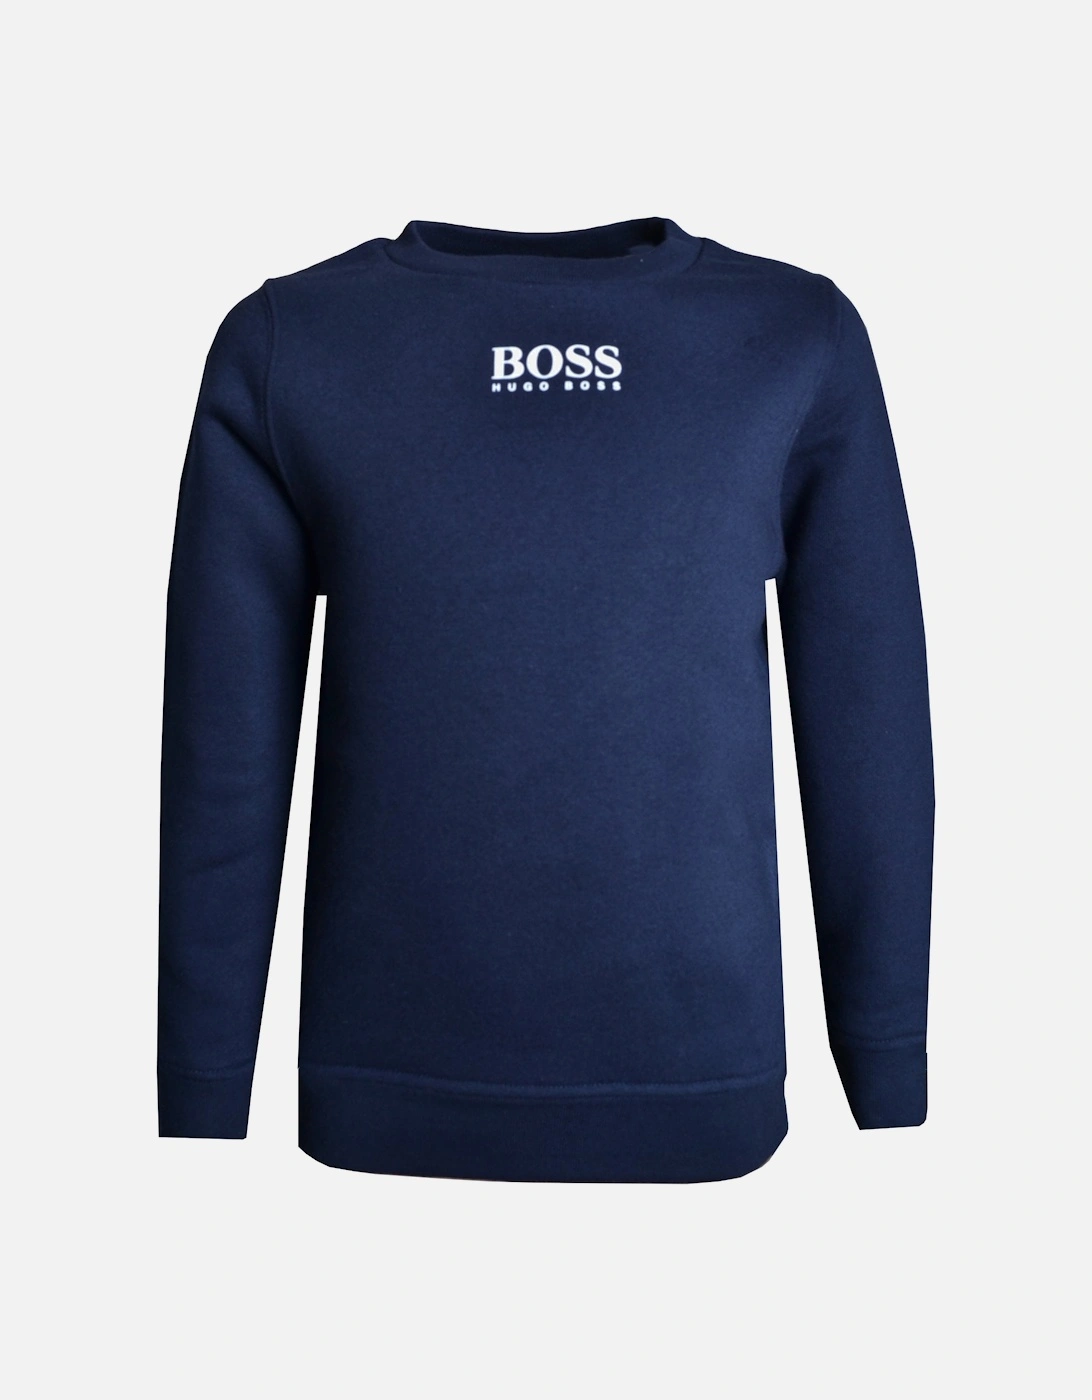 Boy's Navy Sweatshirt, 4 of 3